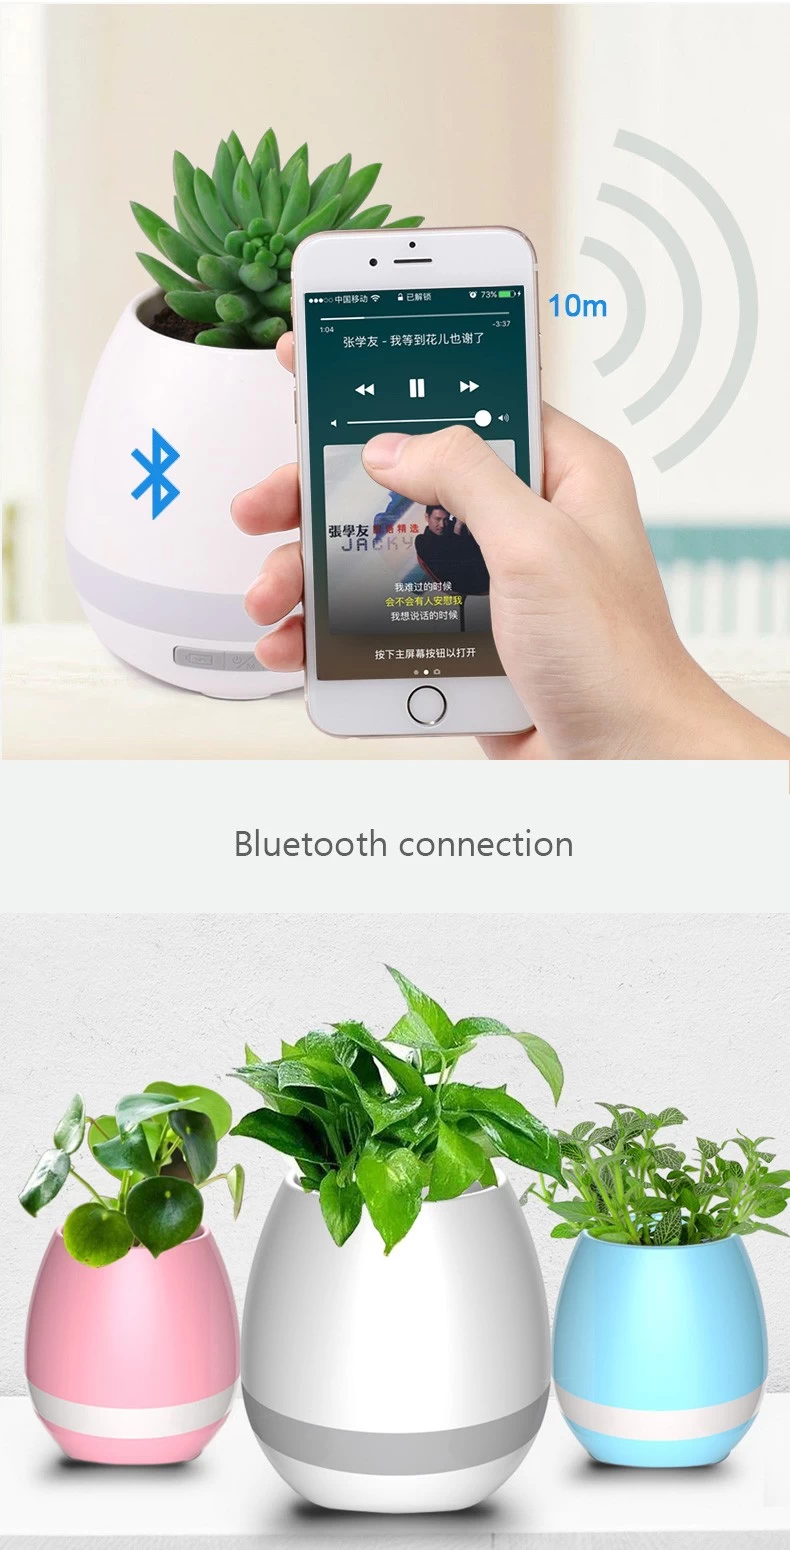  Smart Music Flowerpot  